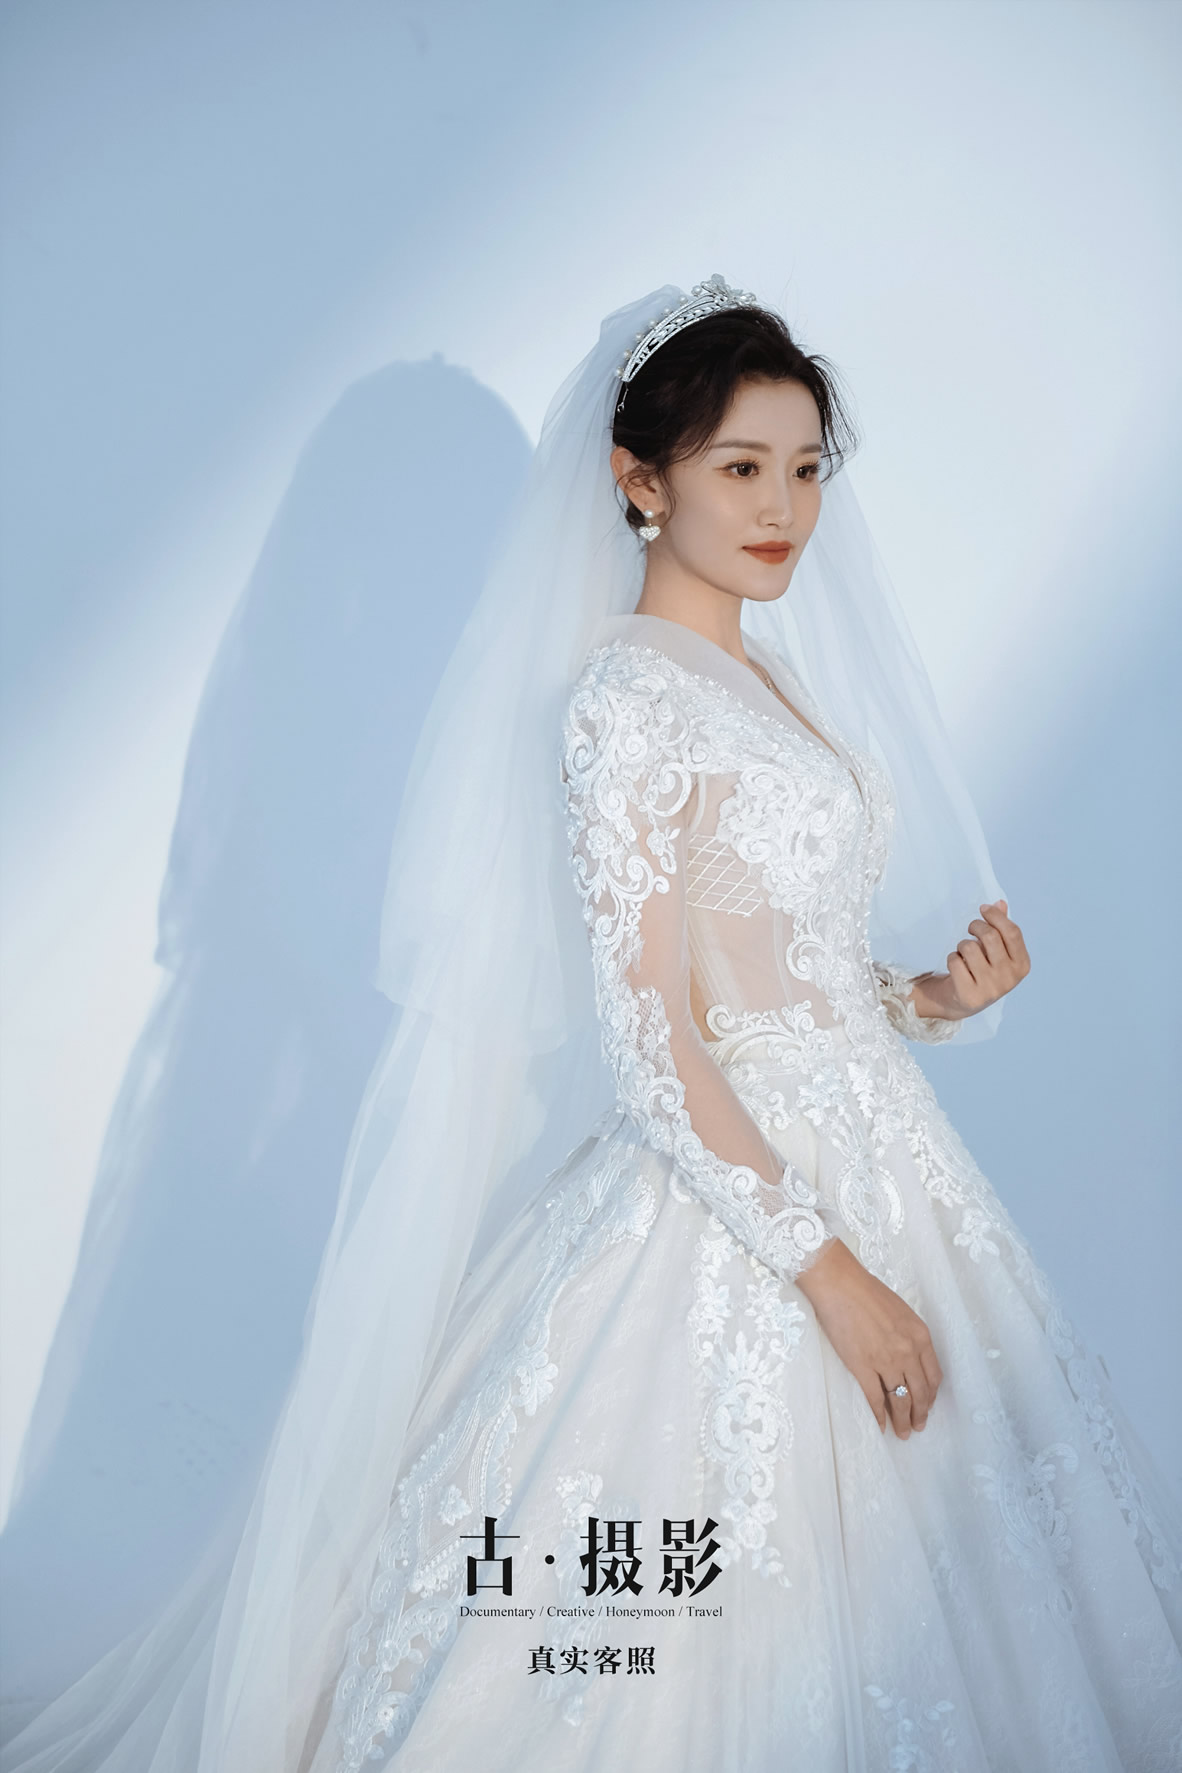 李先生 房小姐 - 每日客照 - 广州婚纱摄影-广州古摄影官网